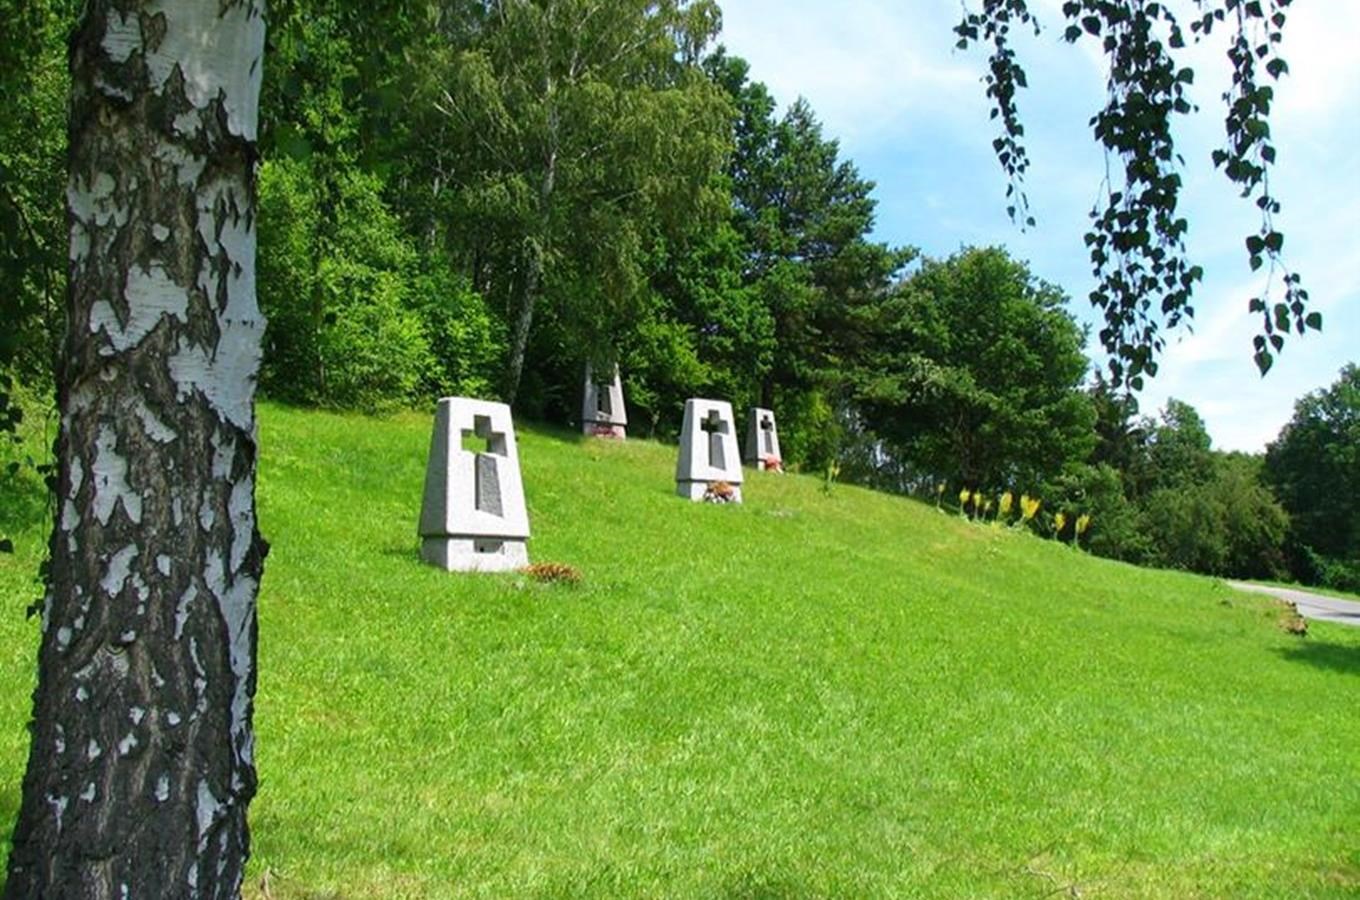 Památník Ležáky zve 28. října na bezplatnou prohlídku